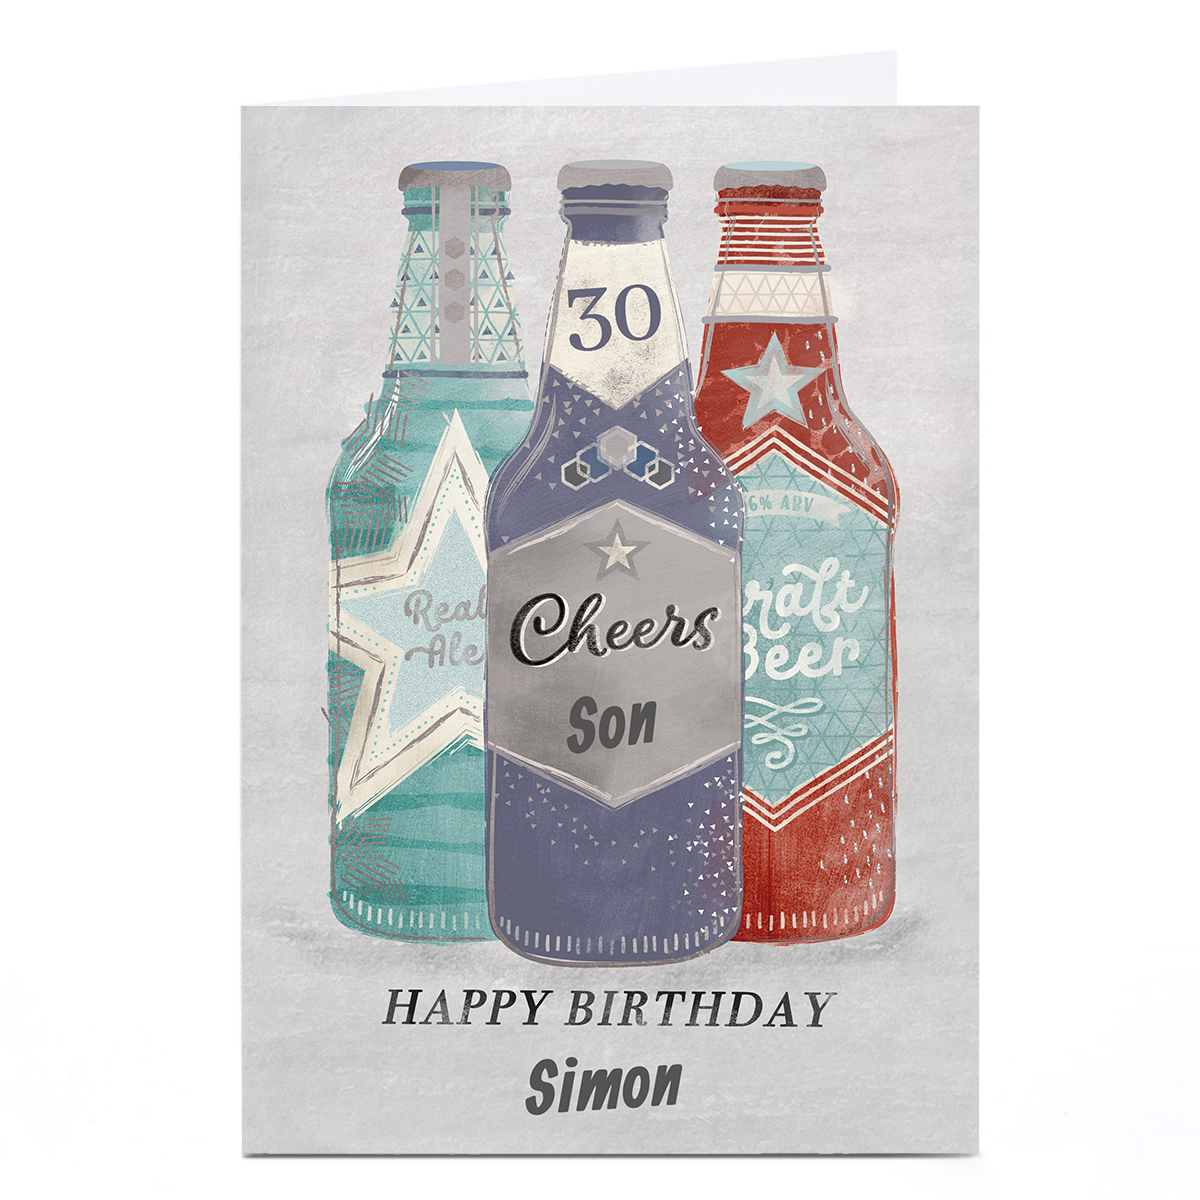 Personalised Birthday Card - Cheers Beer Bottles, Editable Age